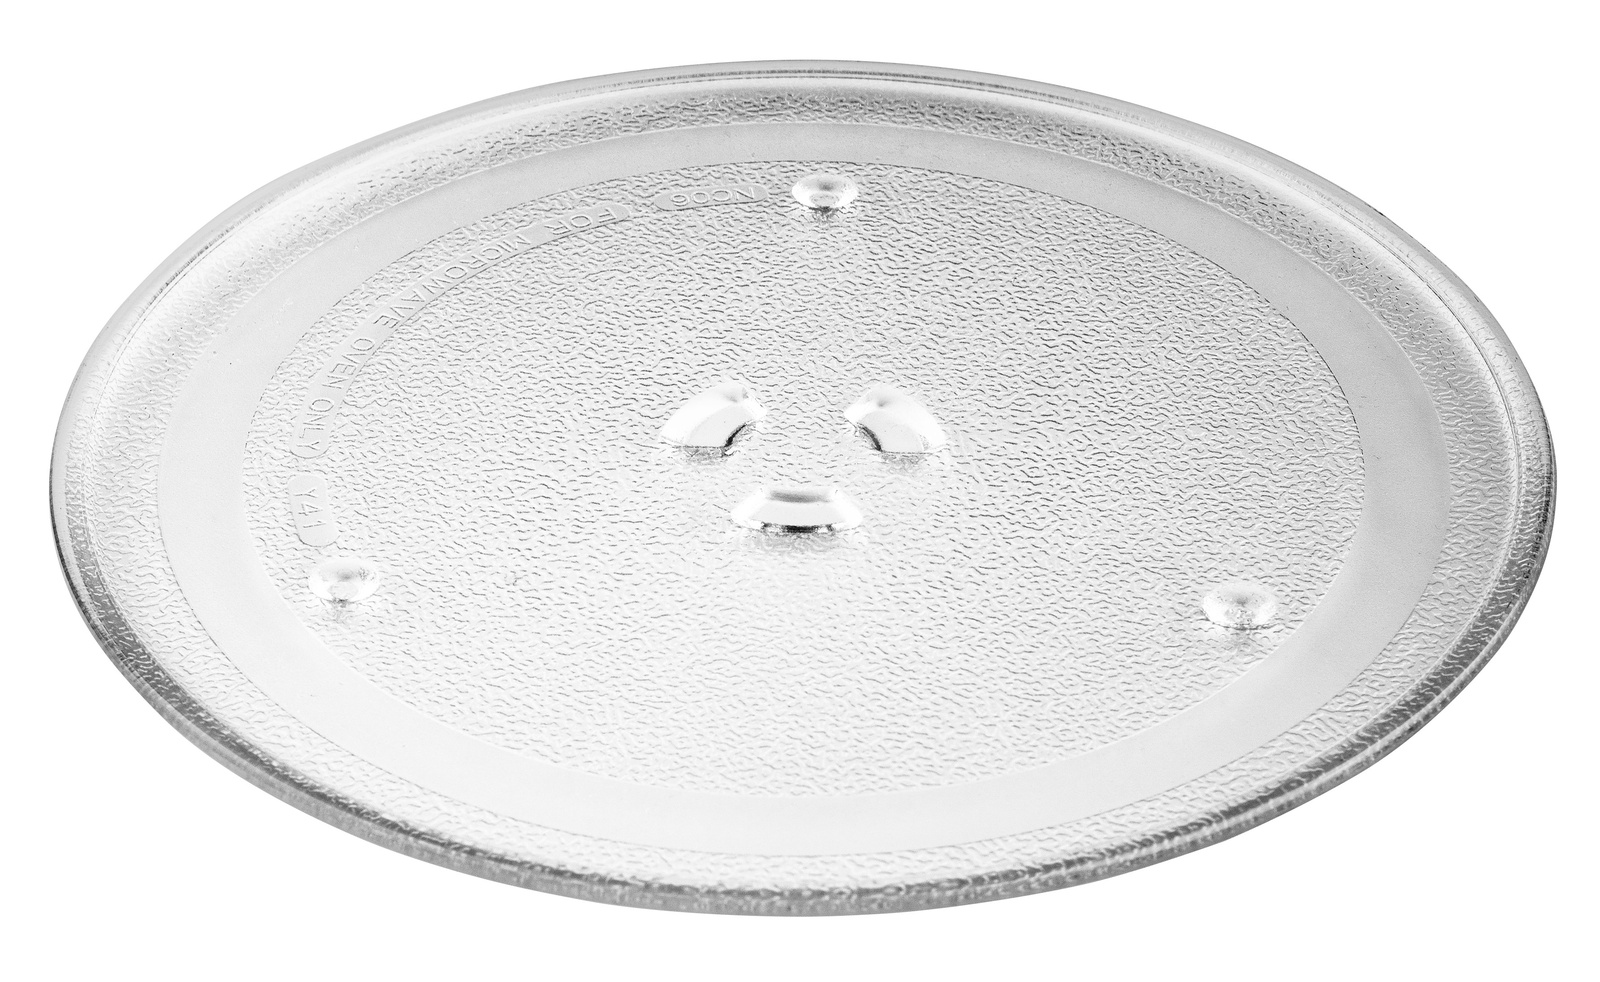 фото ONKRON тарелка для микроволновой печи (СВЧ печи) Samsung (255 мм, с куплером), прозрачная DE74-00027A